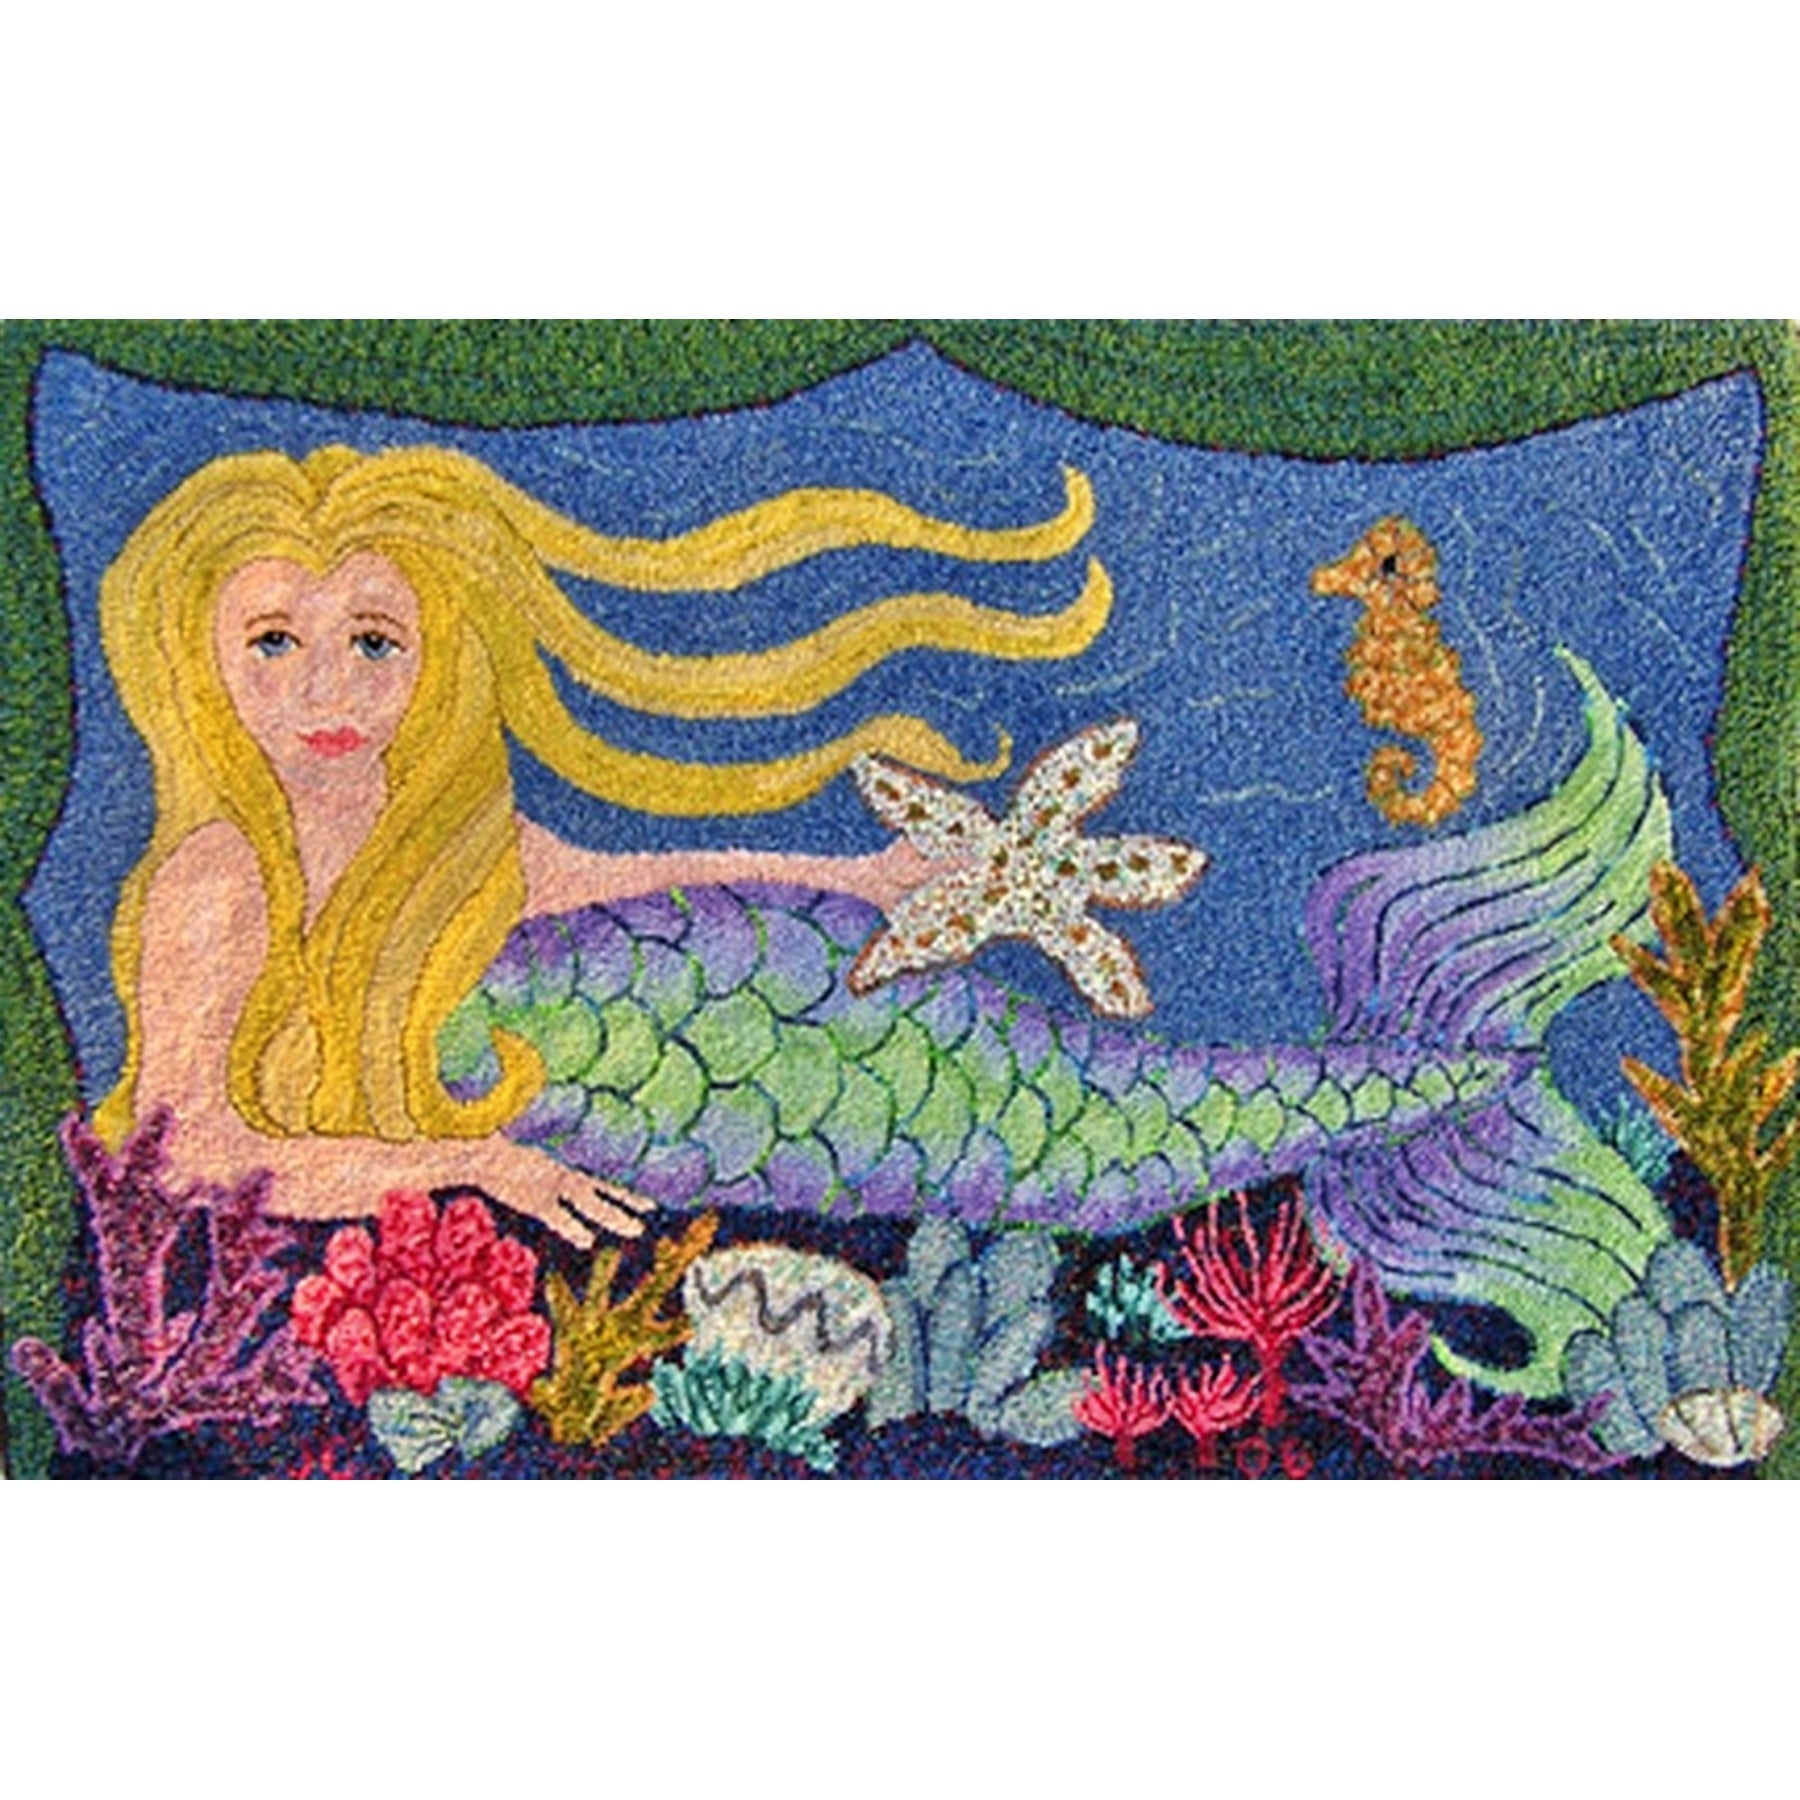 Mermaid, rug hooked by Judy Carter